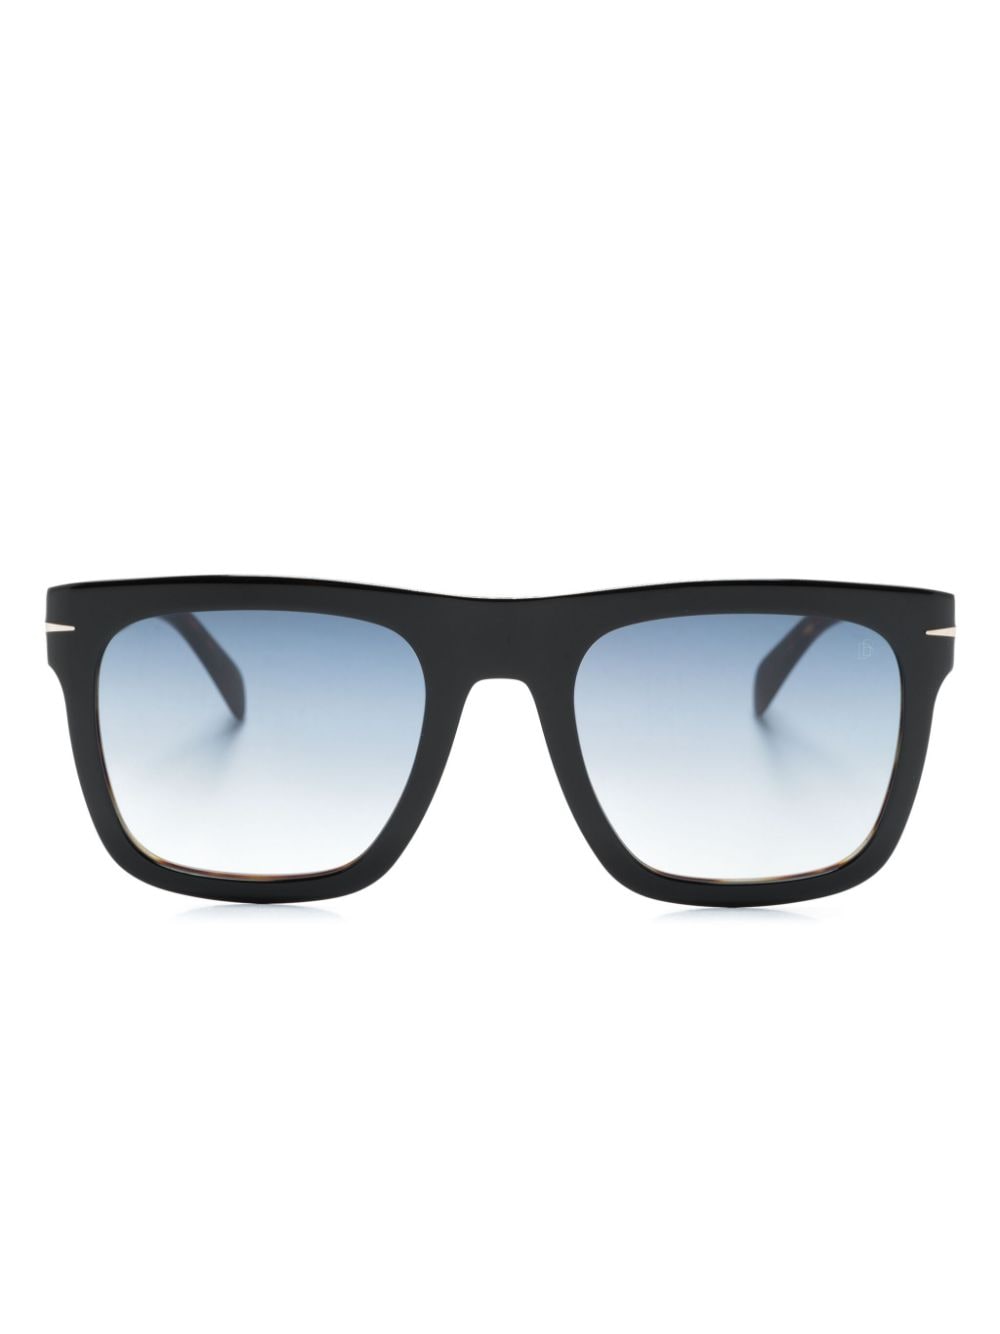 Eyewear by David Beckham DB 7000/S Flat square-frame sunglasses - Black von Eyewear by David Beckham